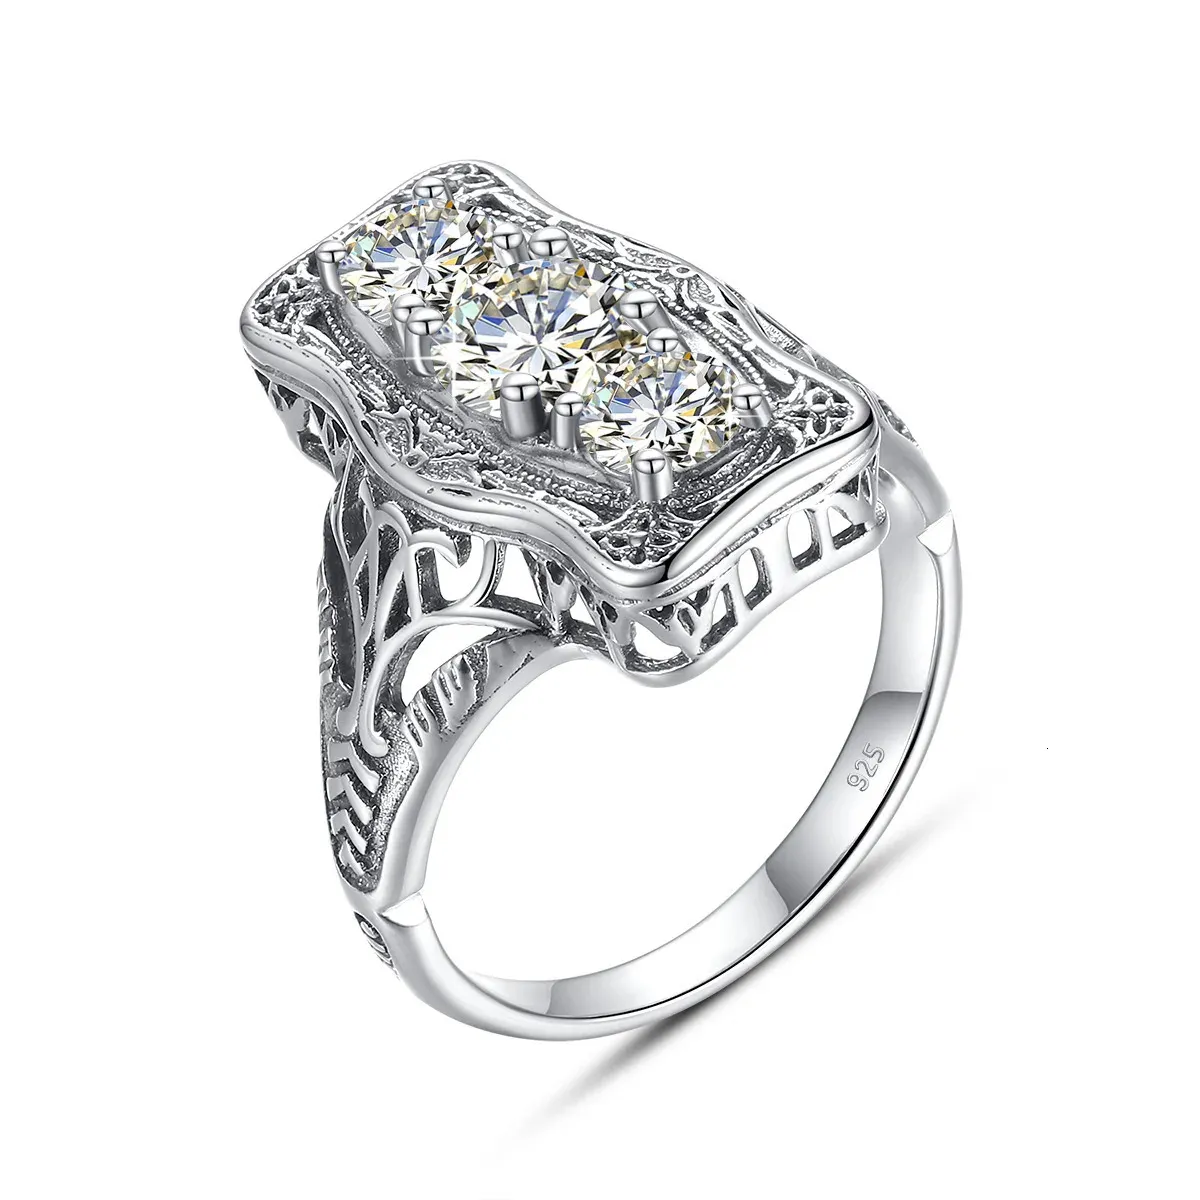 Szjinao Unikalny 3 kamienny pierścień z certyfikatem 100% srebrny 925 biżuteria zaręczynowa dla kobiet Pass Test Diamond 240115